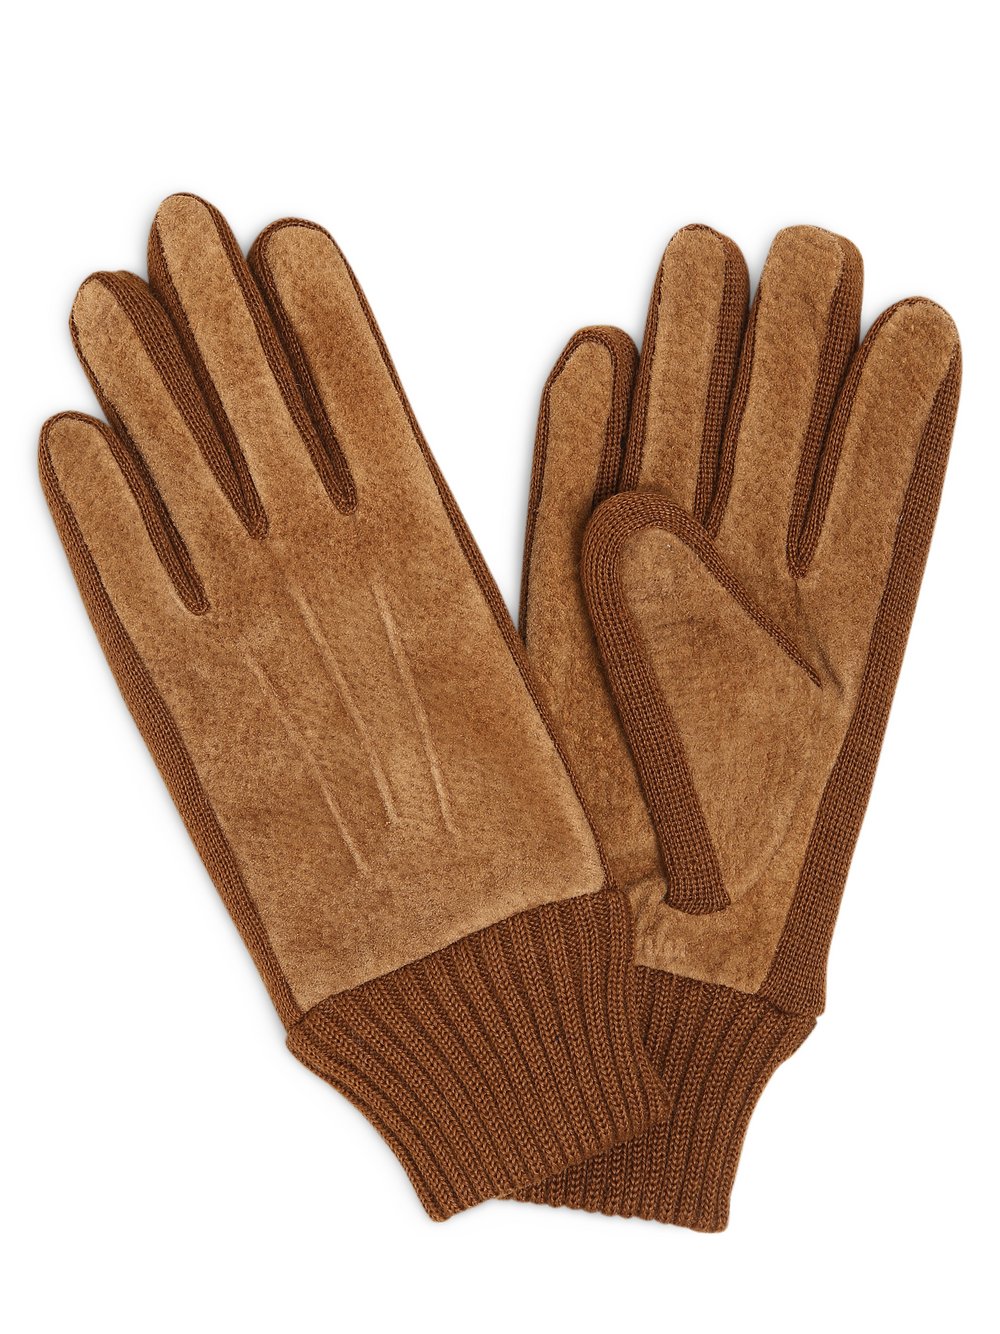 KESSLER - Skórzane rękawiczki damskie, brązowy